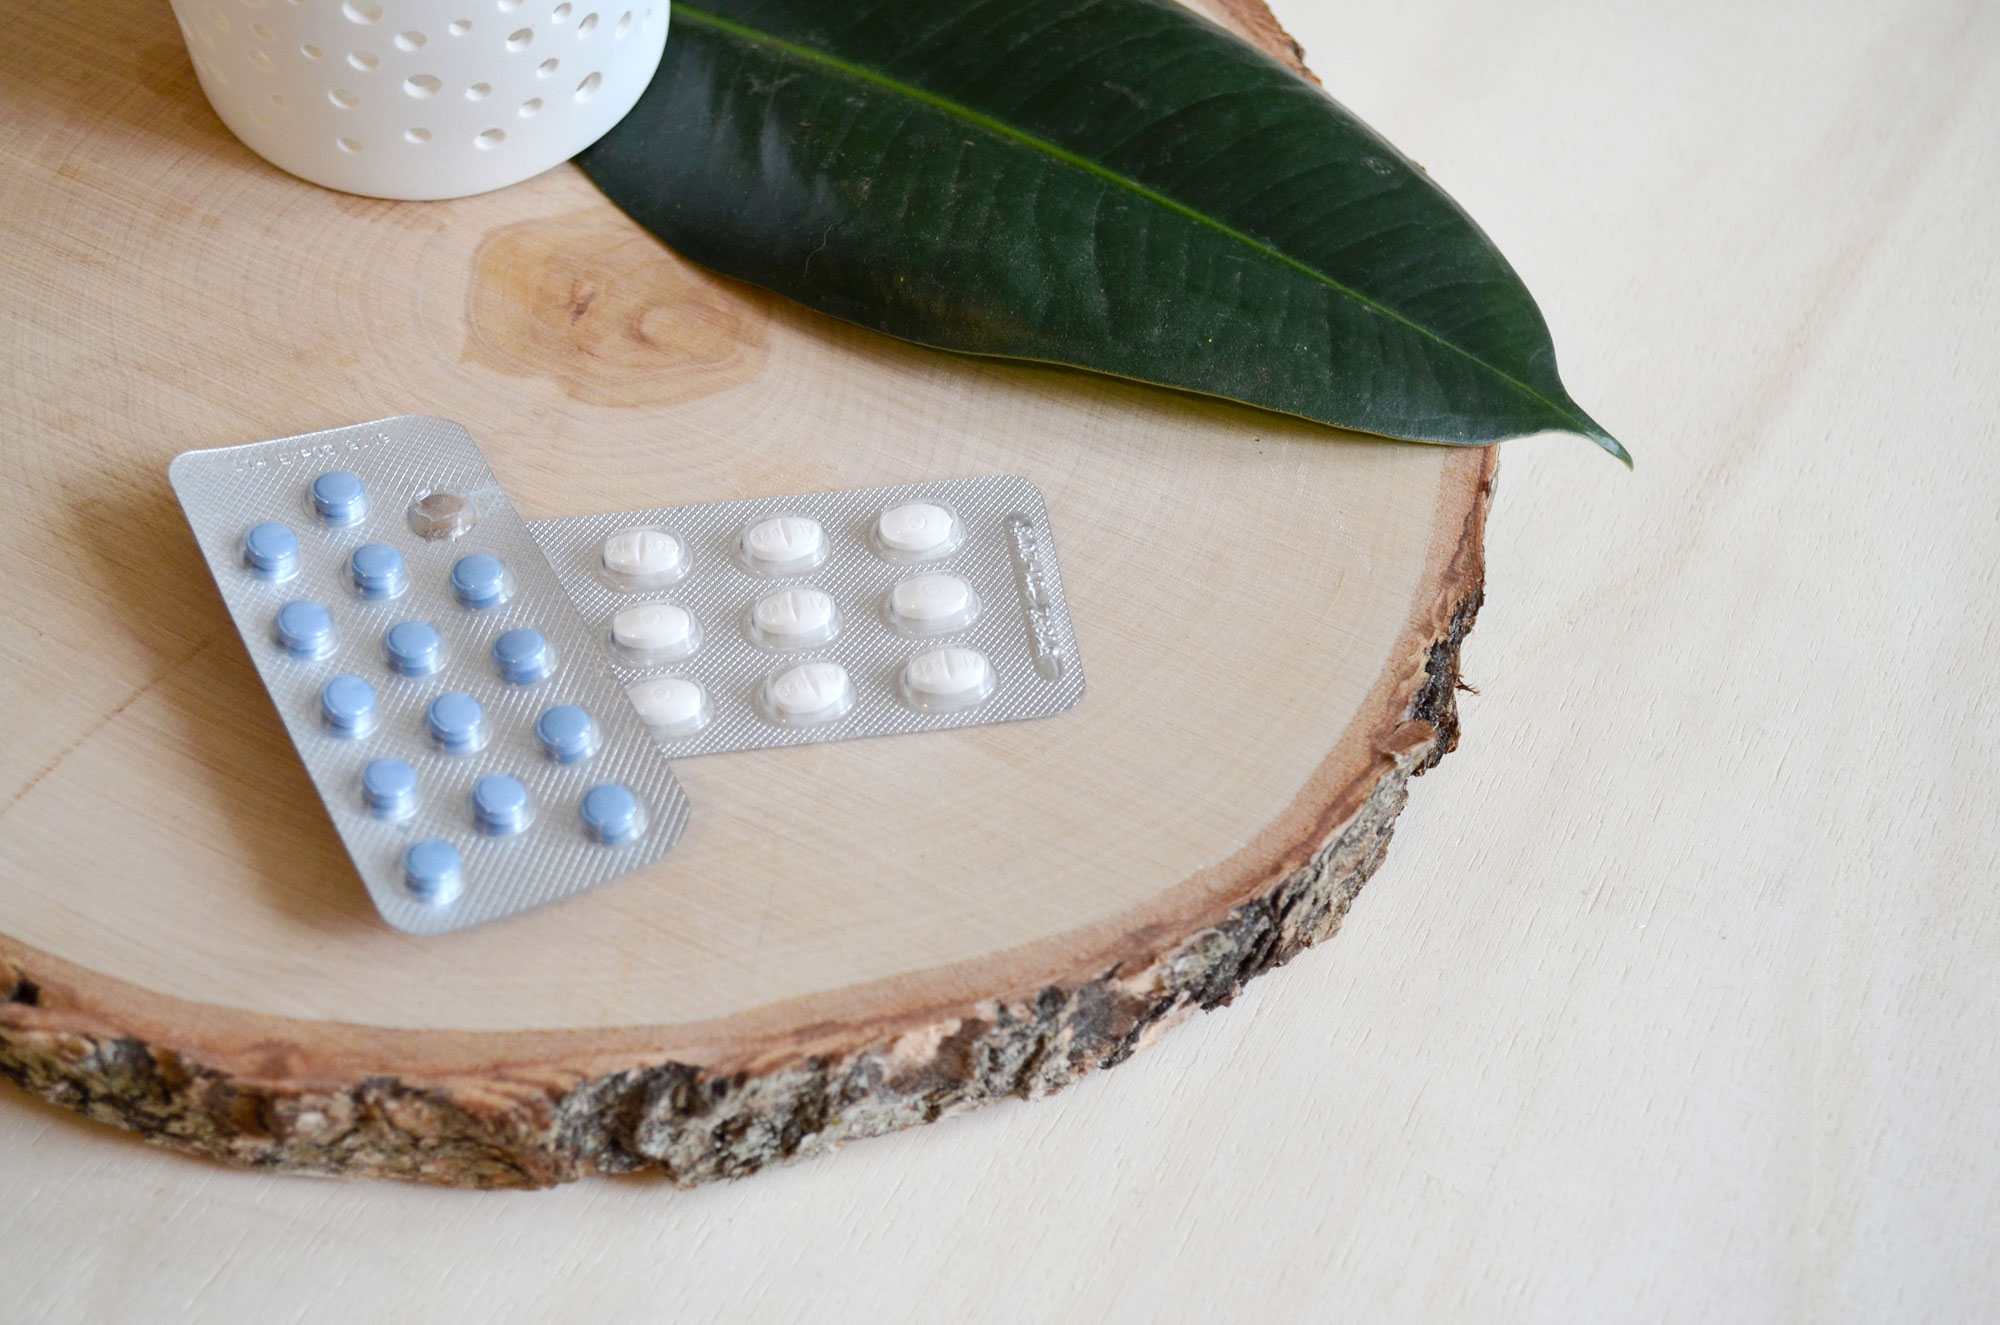 3 ans sans pilule contraceptive : mon bilan et expérience